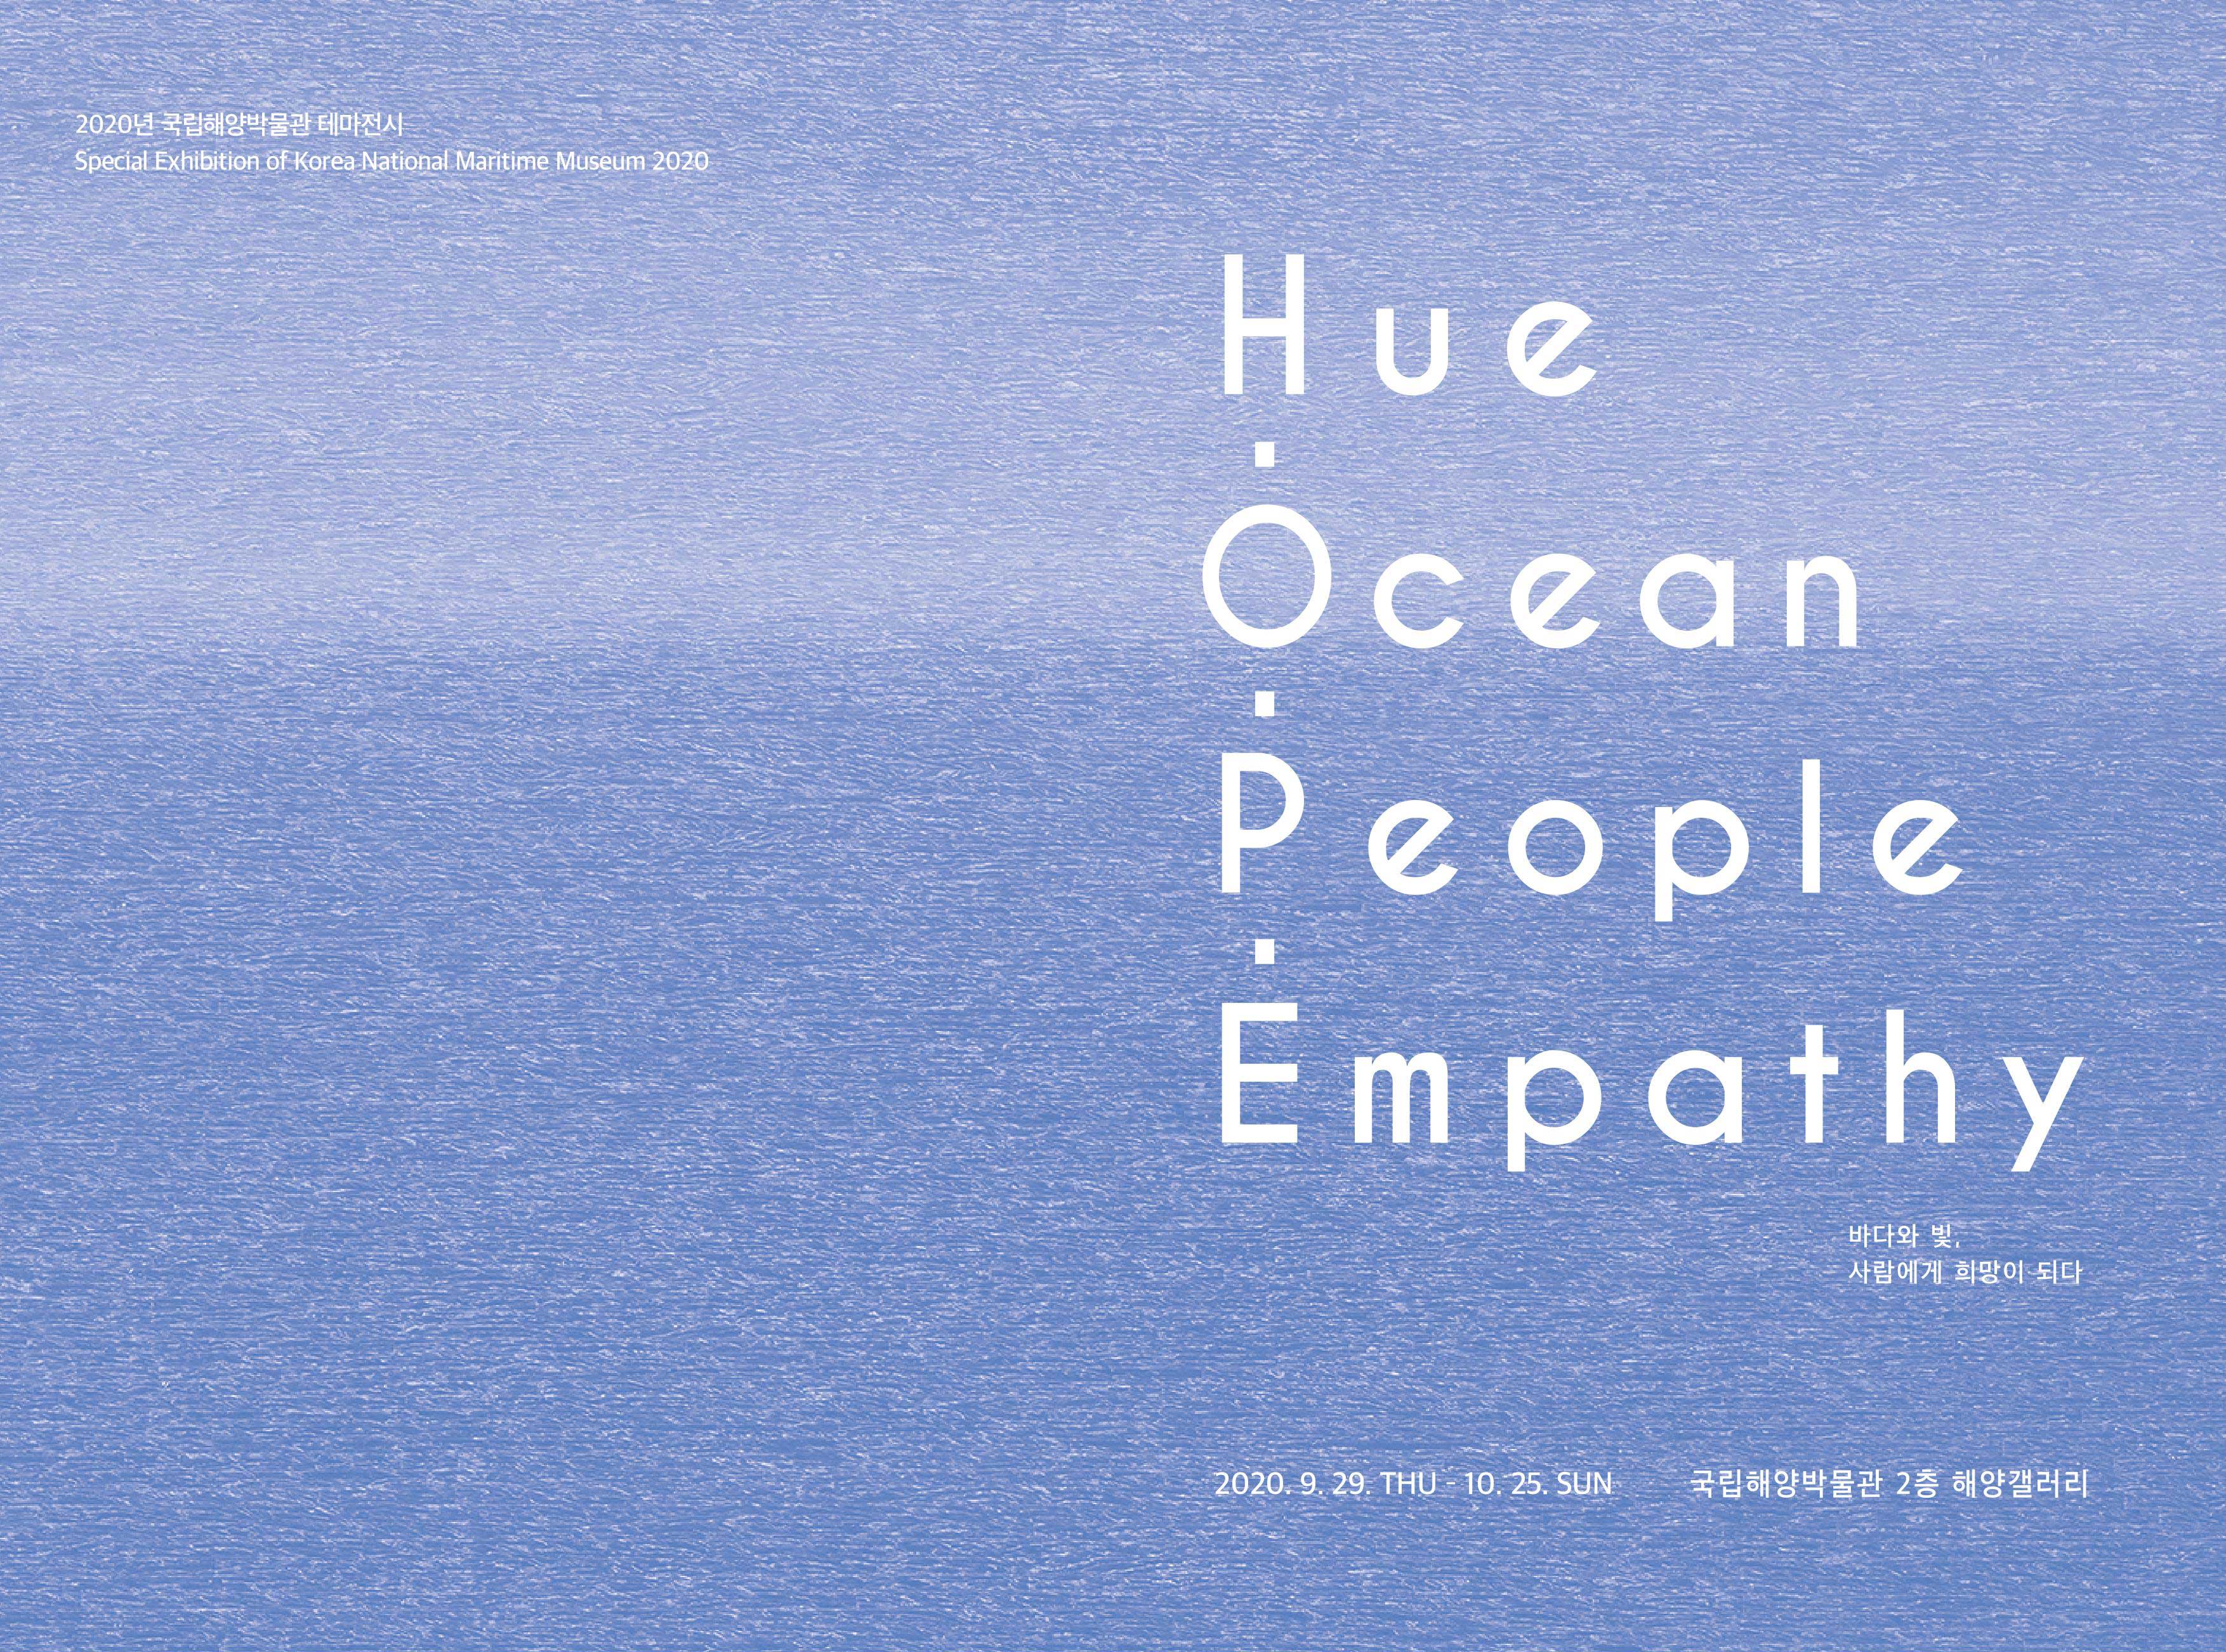 2020년 국립해양박물관 테마전시. Hue Oean People Empathy 바다와 빛, 사람에게 희망이 되다 전시 리플렛. 2020년 9월 29일 화요일부터 10월 25일 일요일까지 국립해양박물관 2층 해양갤러리에서 진행됩니다.